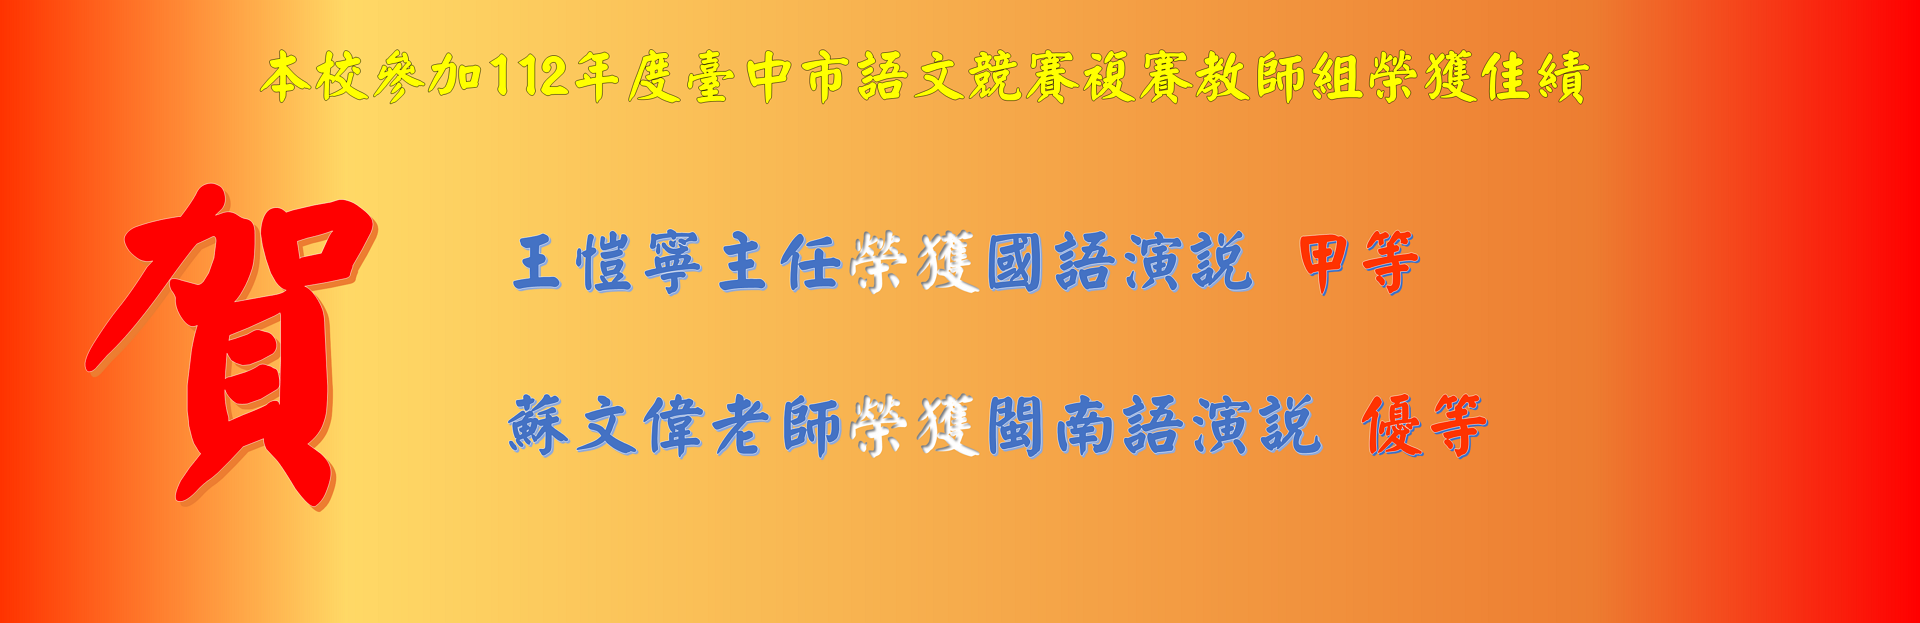 王愷寧主任榮獲112年臺中市語文競賽複賽國語演說 甲等 蘇文偉老師榮獲閩南語演說 優等